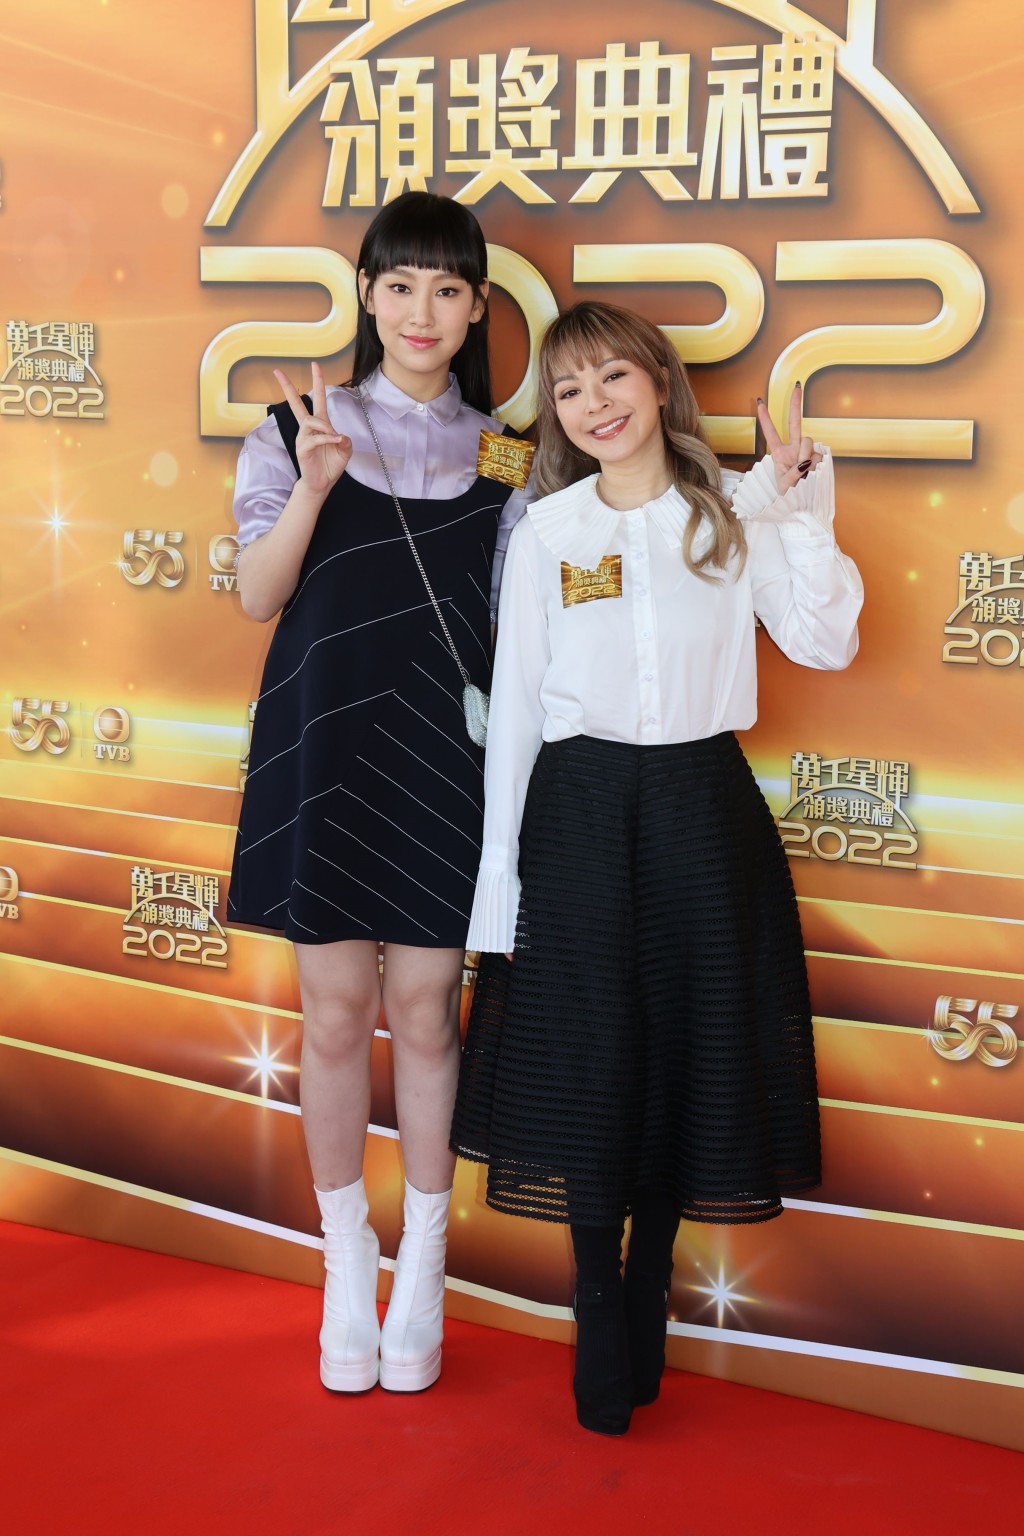 有傳身為TVB「女飛躍」大熱的她好大機會缺席1月8日舉行的《萬千星輝頒獎典禮2022》。